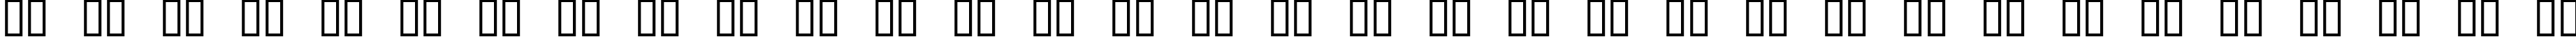 Пример написания русского алфавита шрифтом scrabble